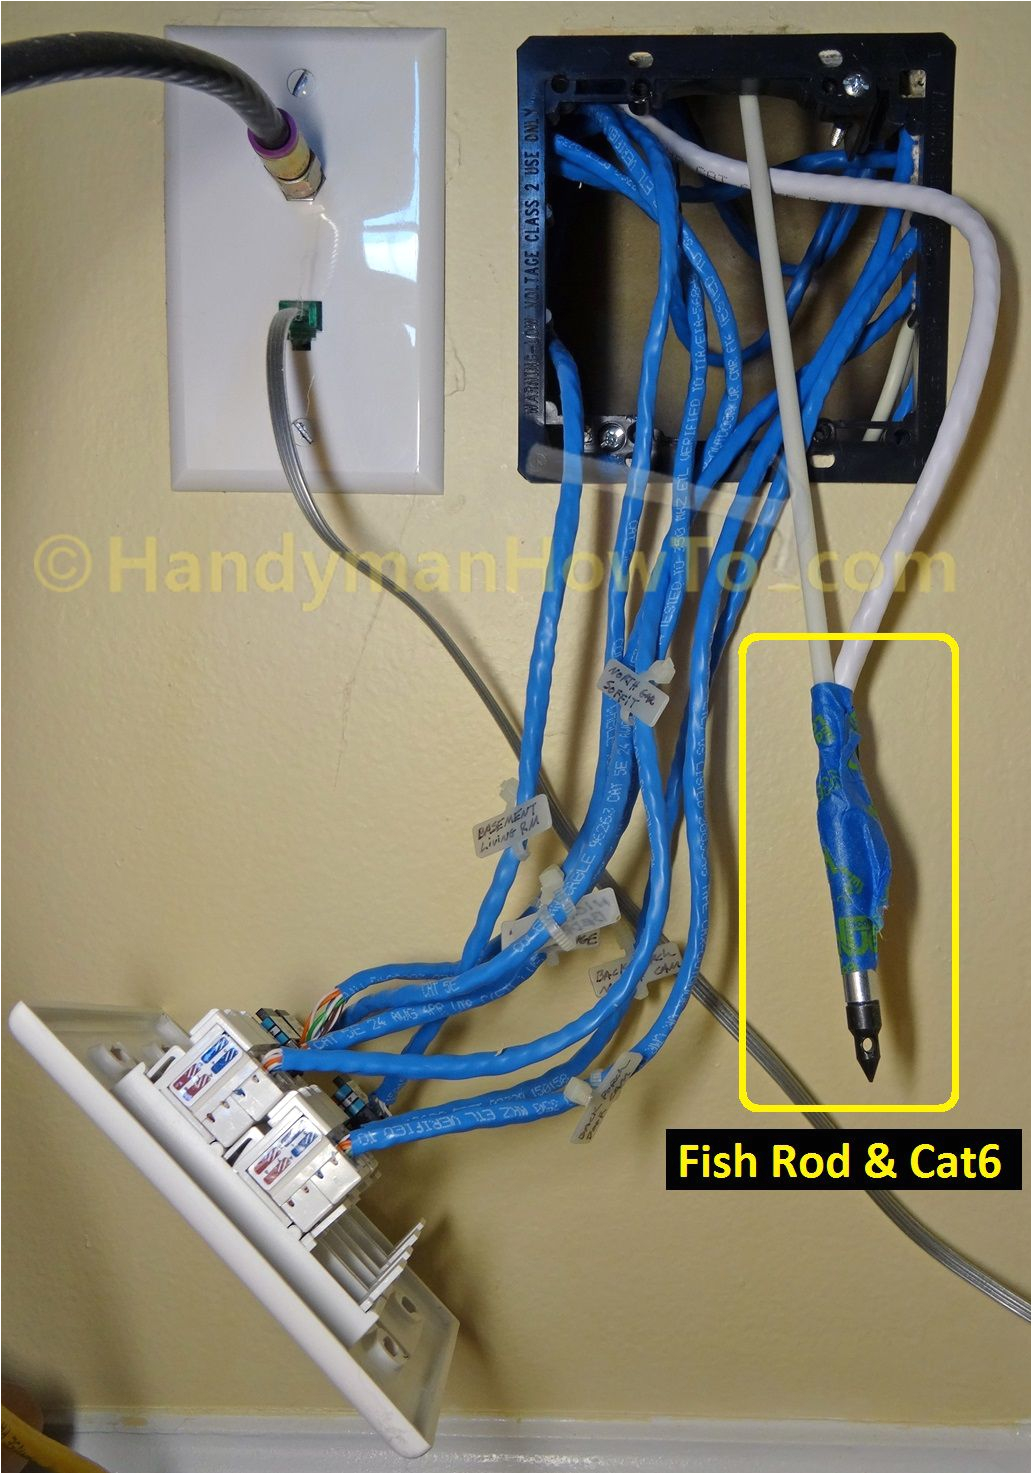 lan cable wiring home wiring diagram show lan cable wiring diagram cat 5e lan cable wiring home